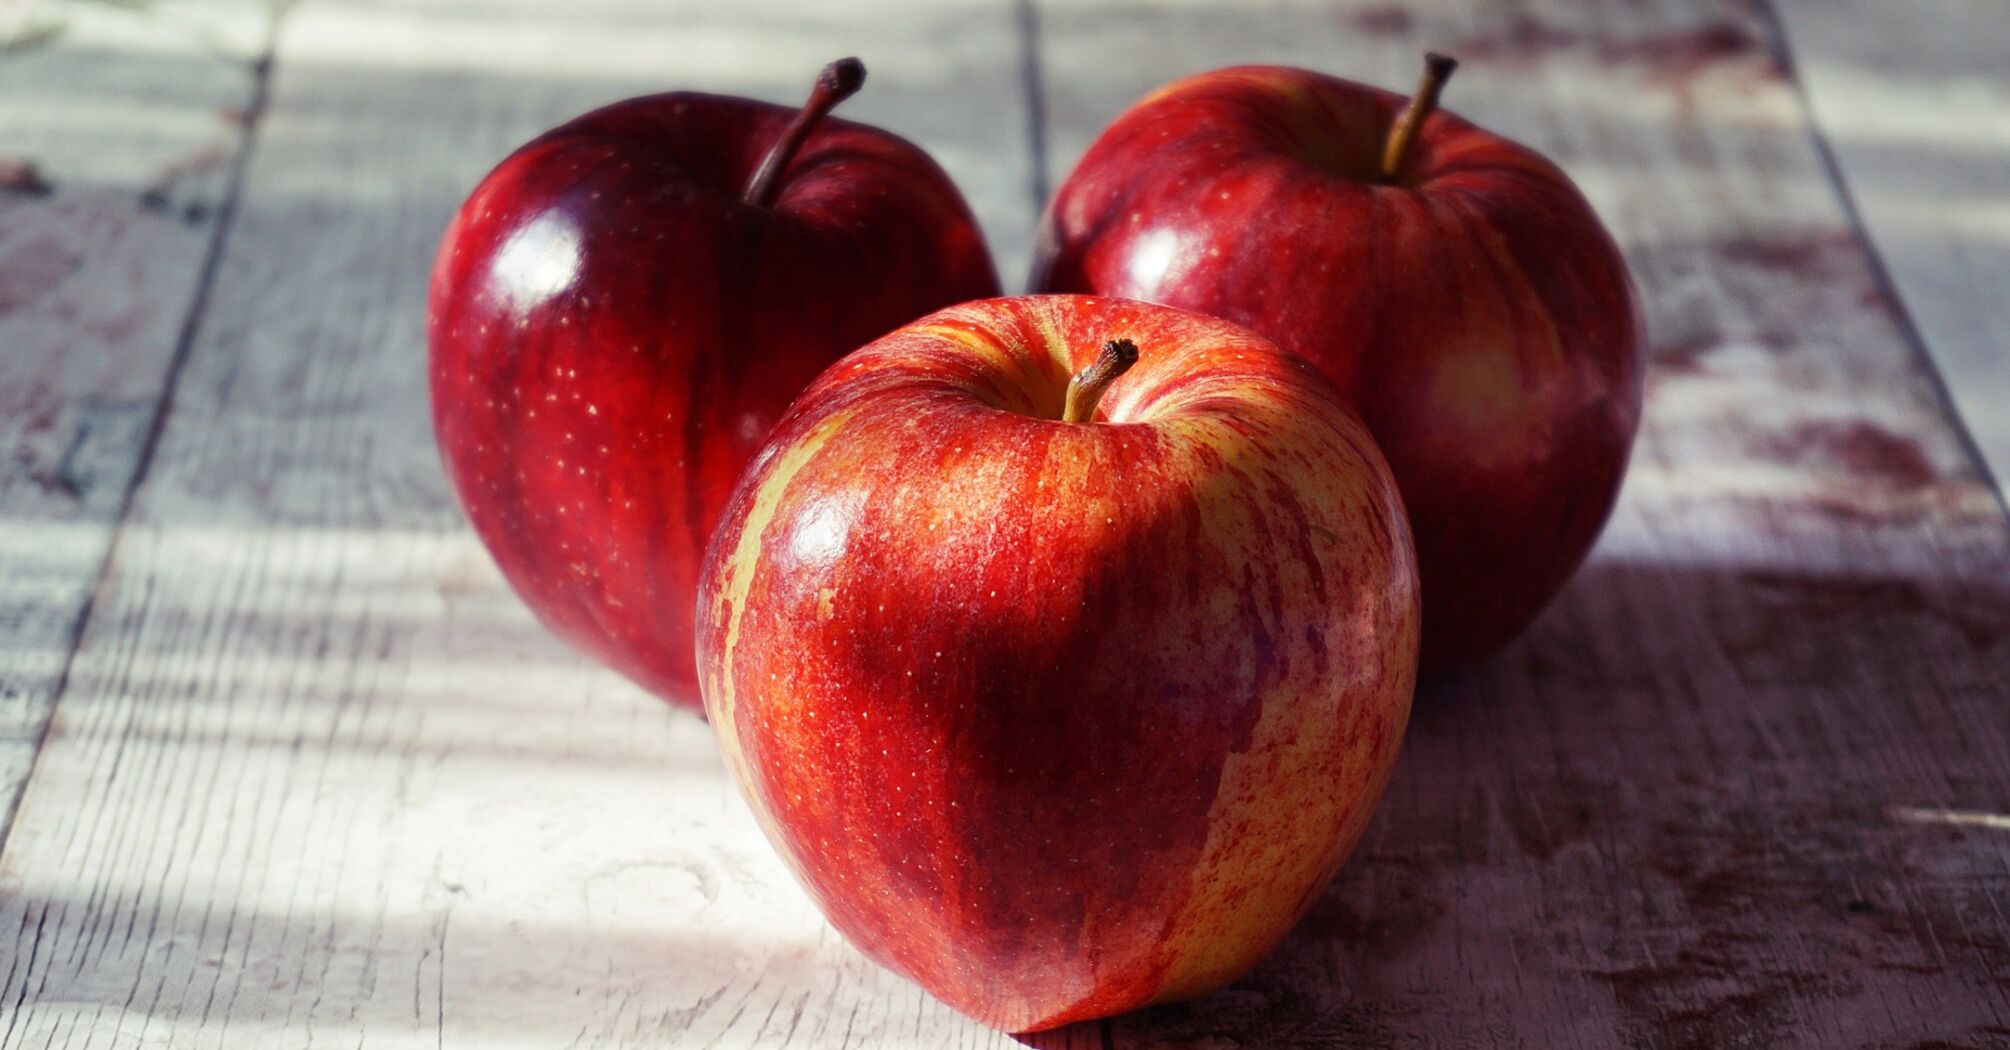 Стоит ли каждый день есть яблоки: что говорит наука и советуют ли врачи